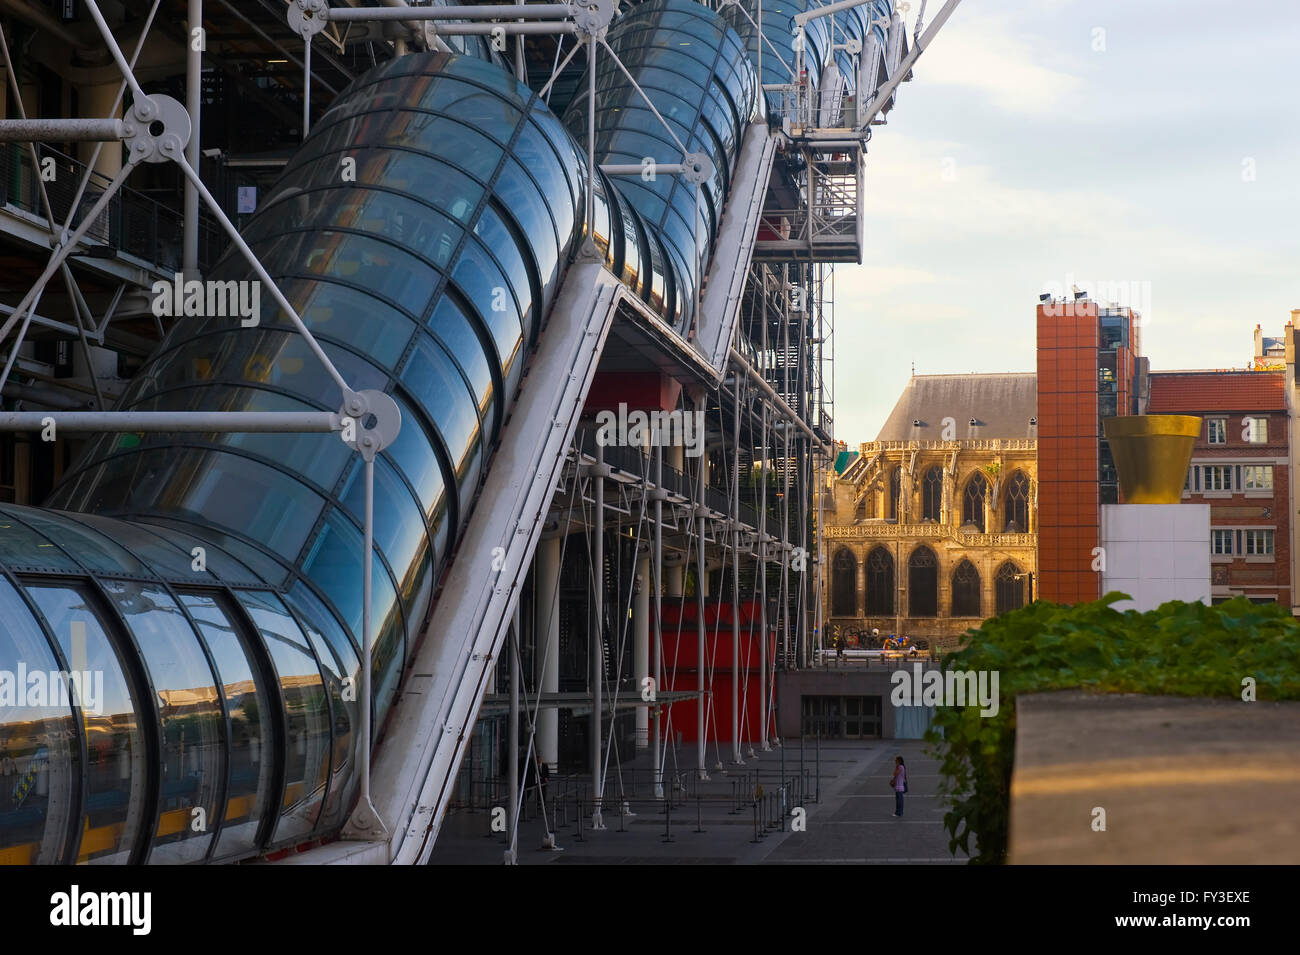 Centre Pompidou Centre Georges Pompidou ou également connu sous le nom de Beaubourg, Paris, France Banque D'Images